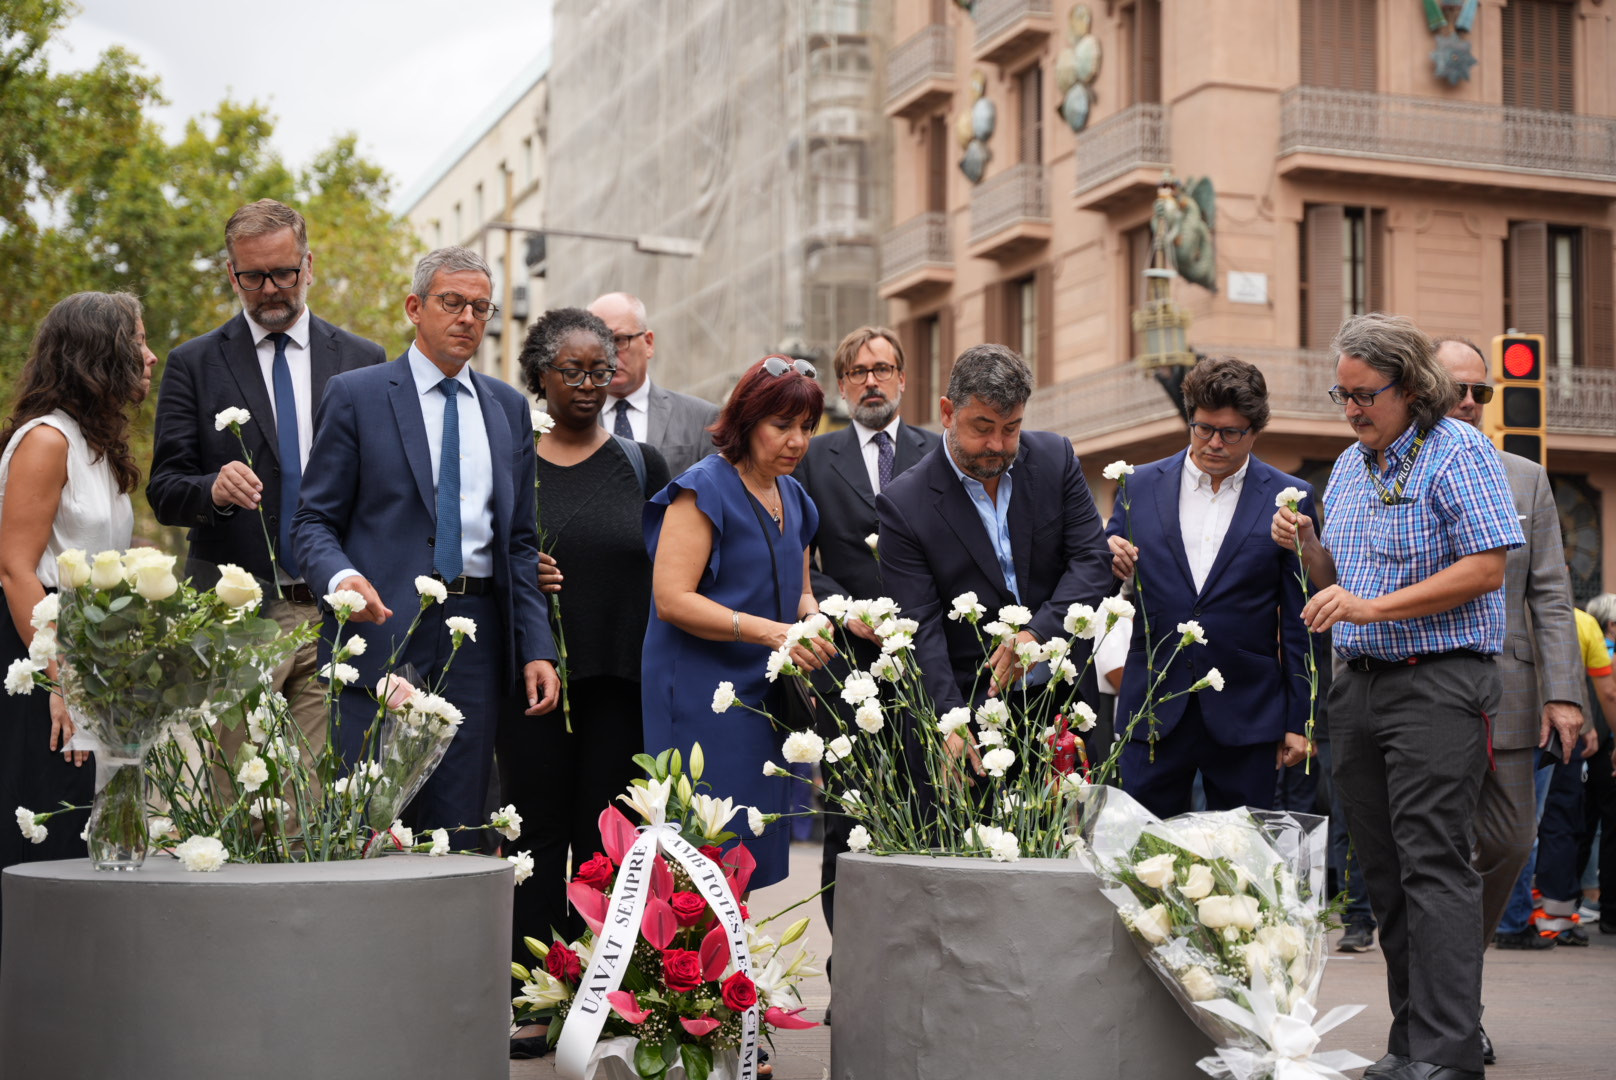 Familiares de las víctimas depositan flores en el lugar del atentado / LUIS MIGUEL AÑÓN - CRÓNICA GLOBAL